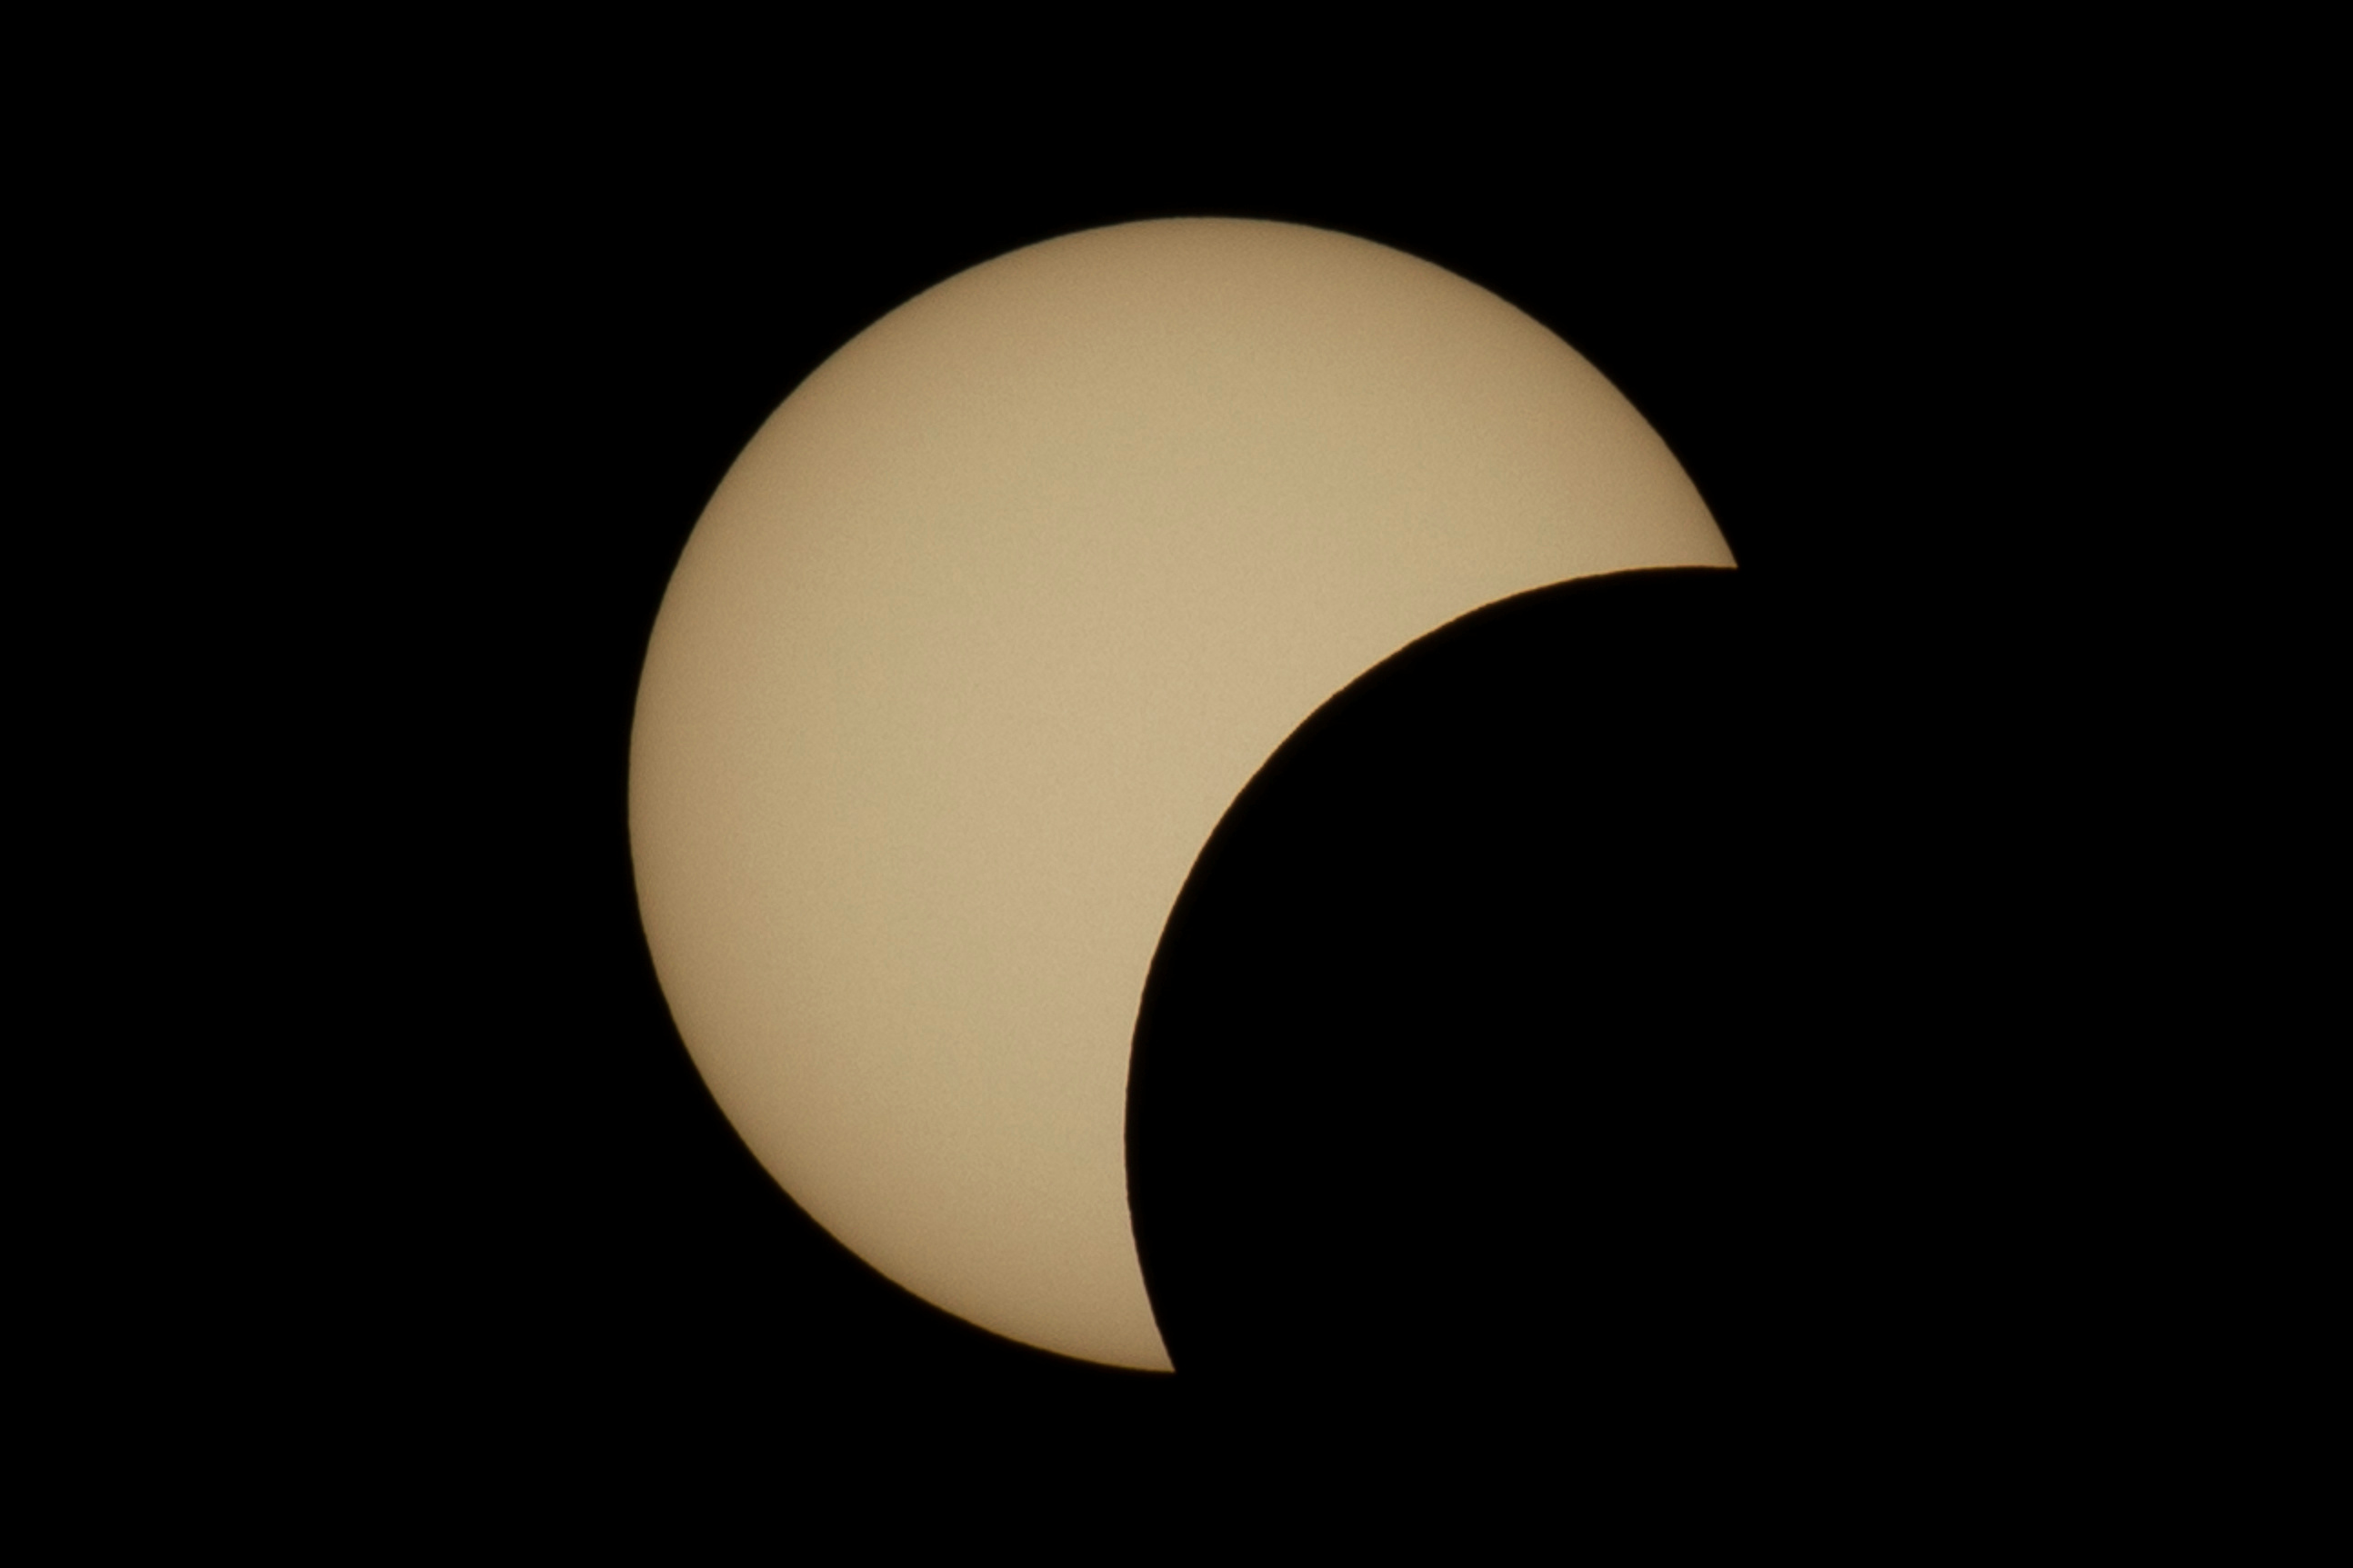 Está prohibido observar el eclipse solar parcial con filtros caseros (como vidrios ahumados), anteojos de sol tradicionales o placas radiográficas, ya que podrían provocar daños oftalmológicos
REUTERS/Amir Cohen